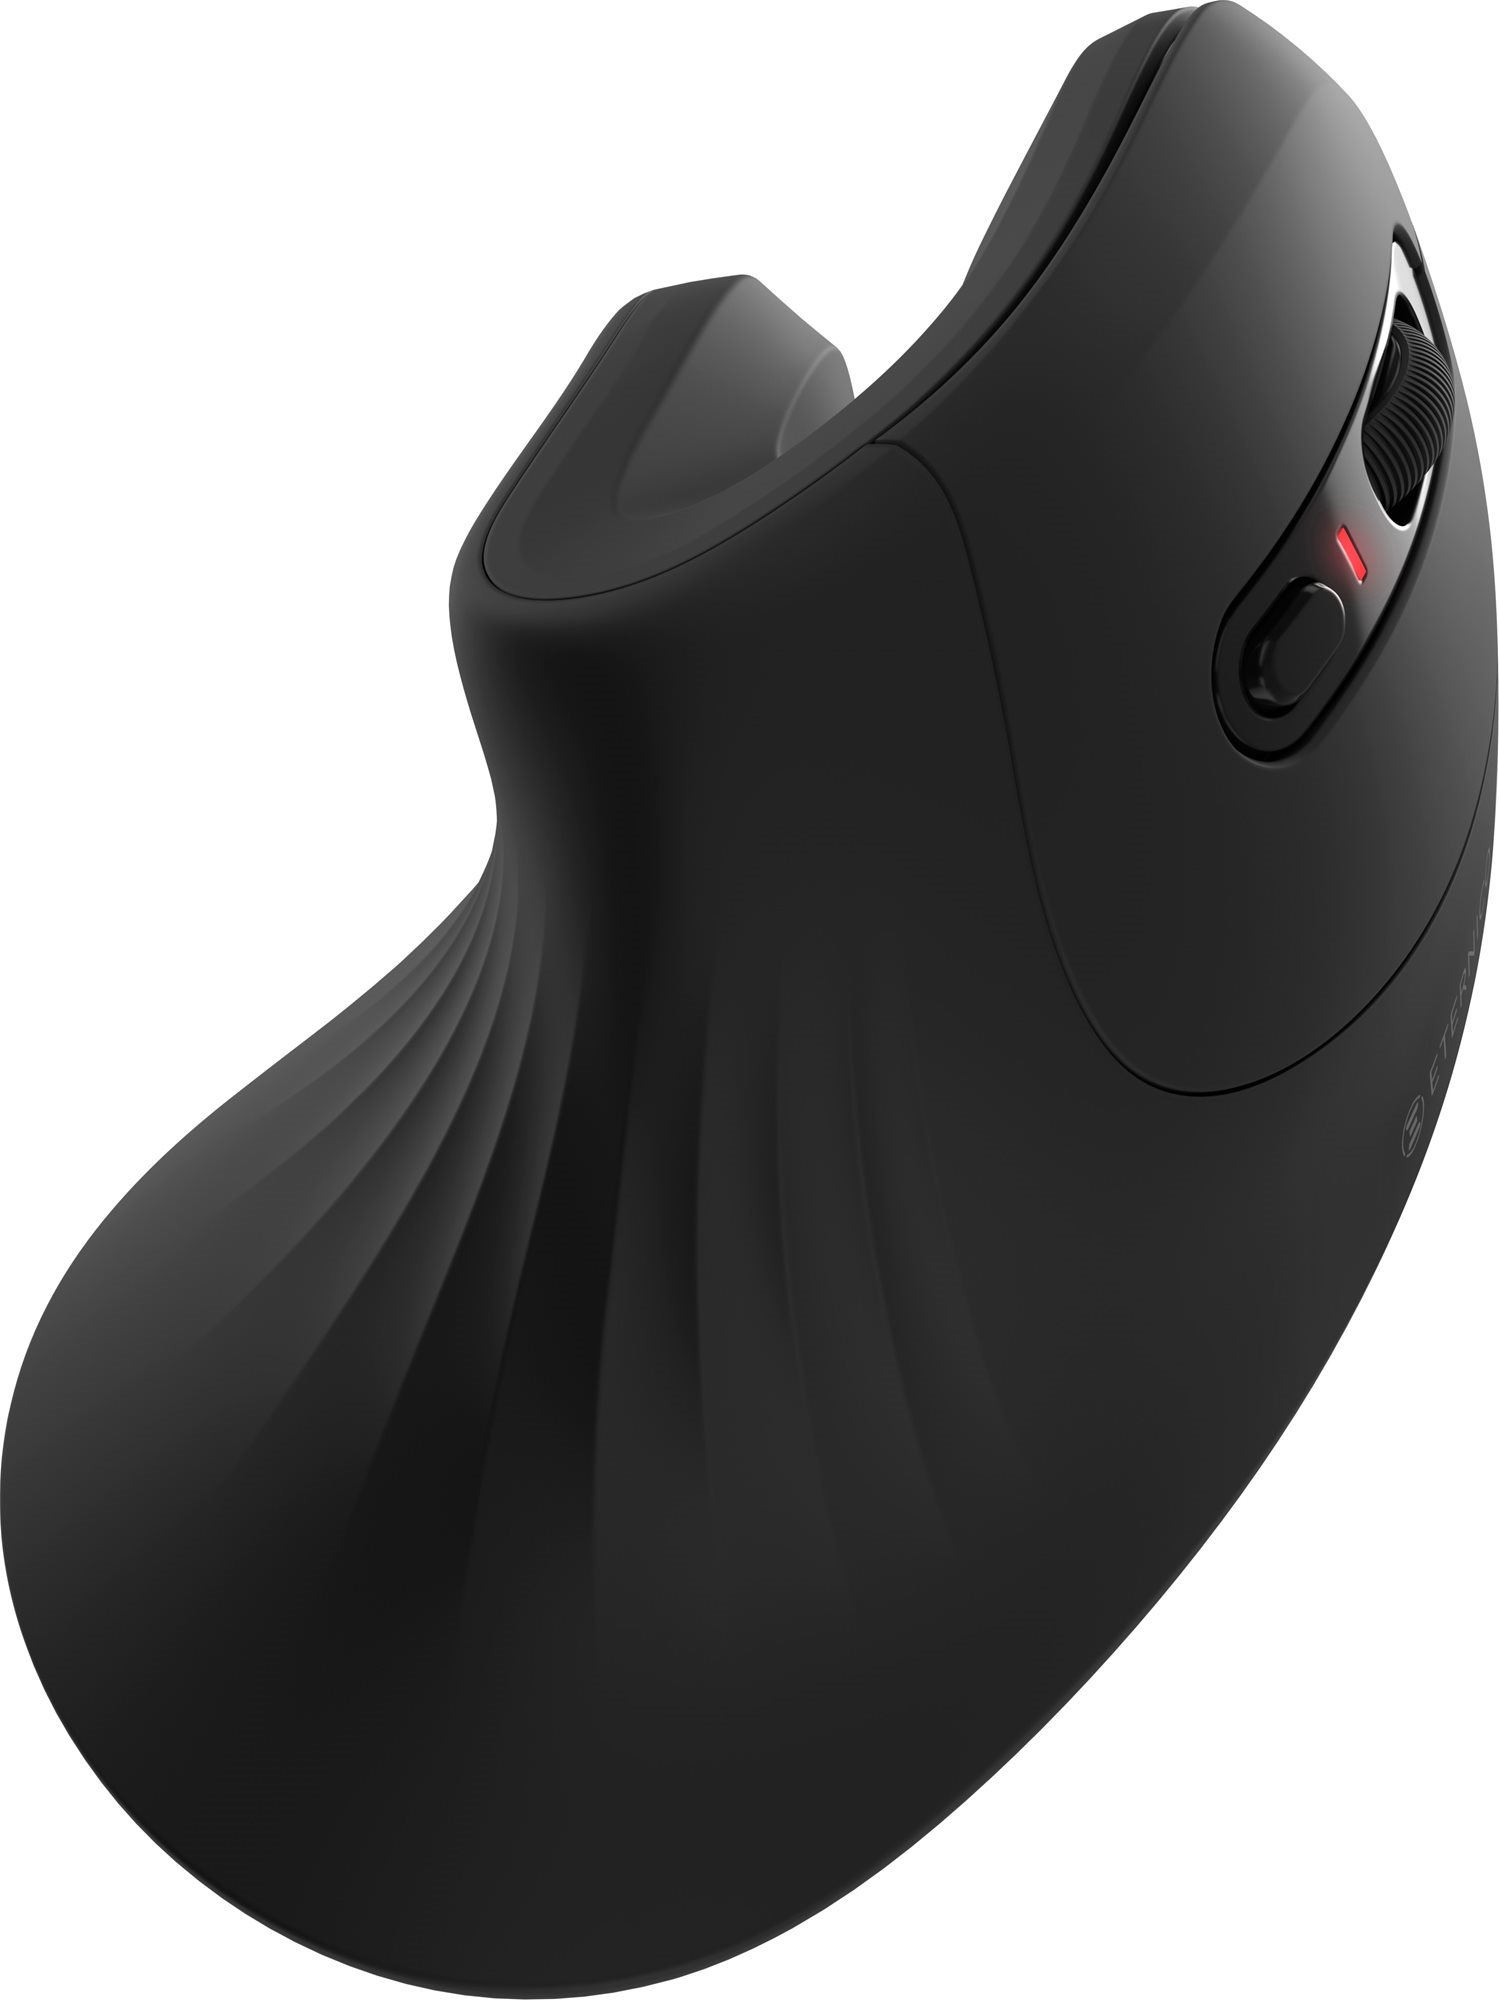 Egér Eternico Office Vertical Mouse MVS390 fekete